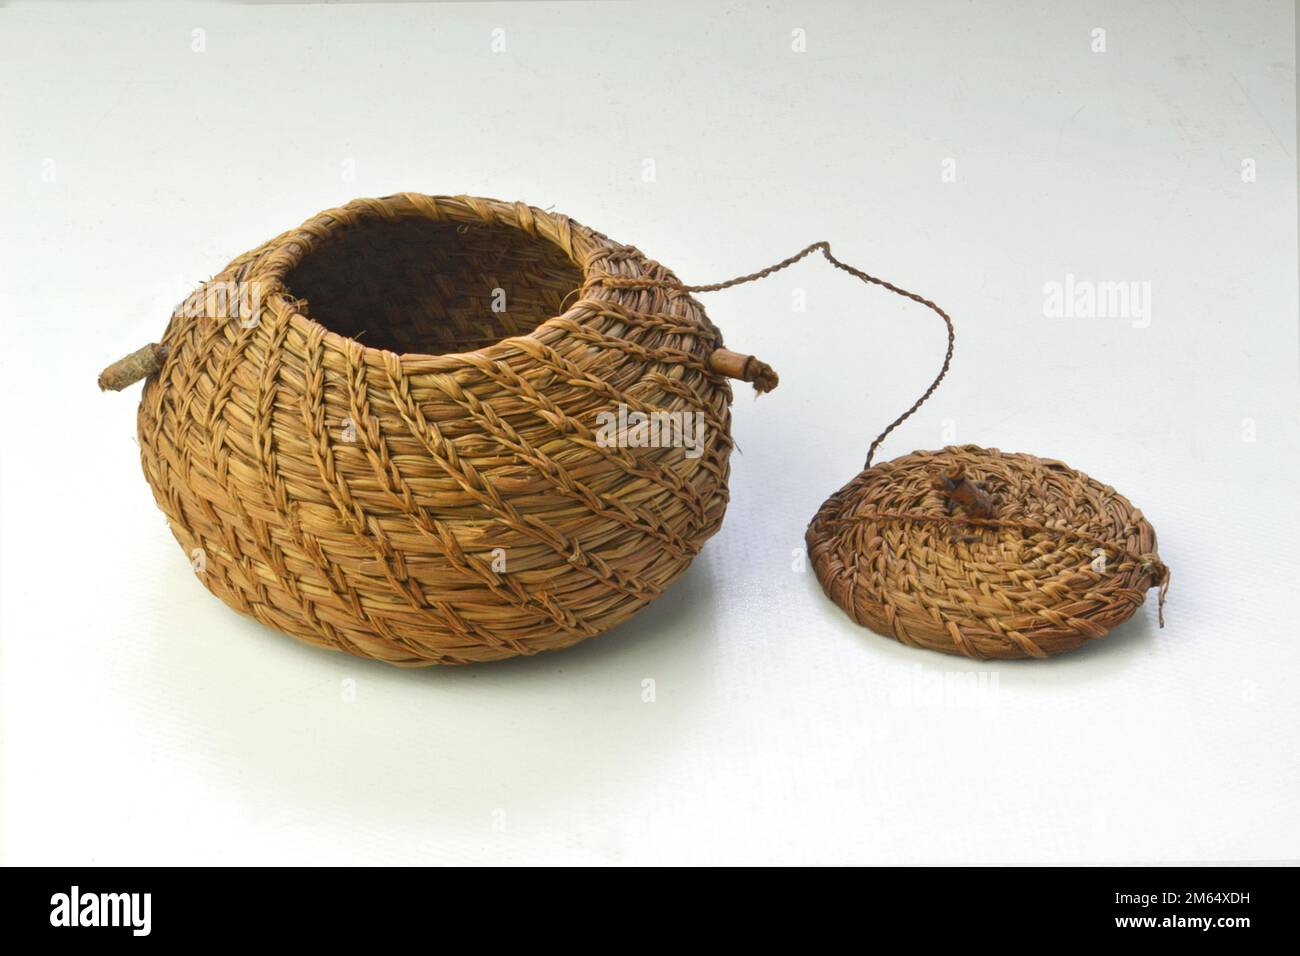 Petit pot fait par les Indiens brésiliens d'une manière artisanale. Il mesure neuf centimètres à sa base. Banque D'Images